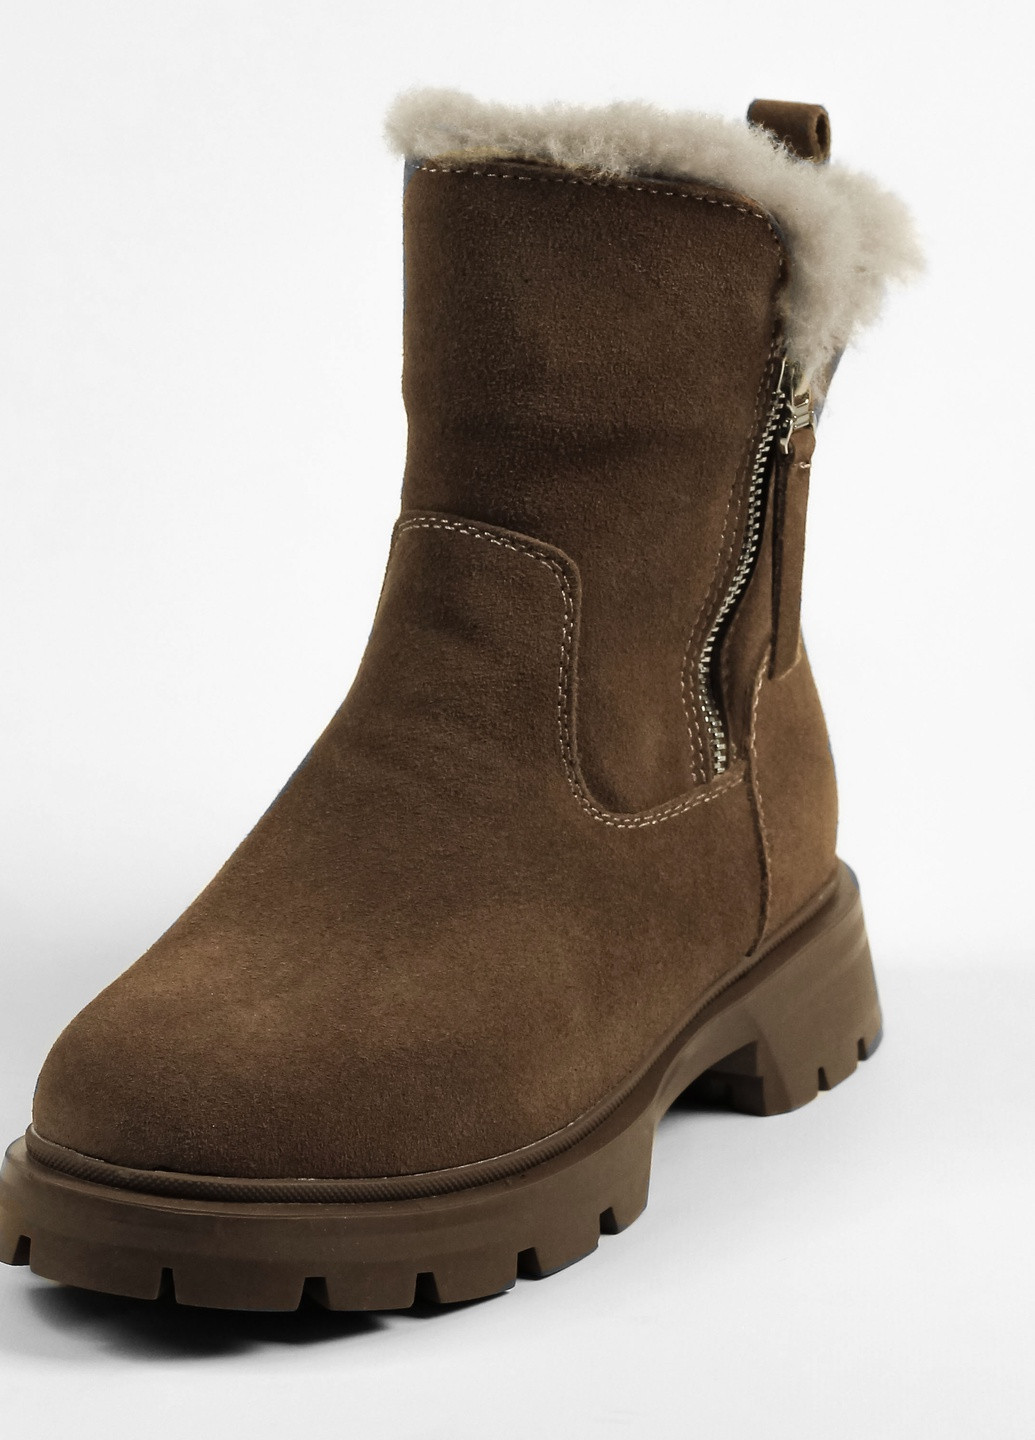 Зимние ботинки зимние коричневые замша Lonza из натуральной замши